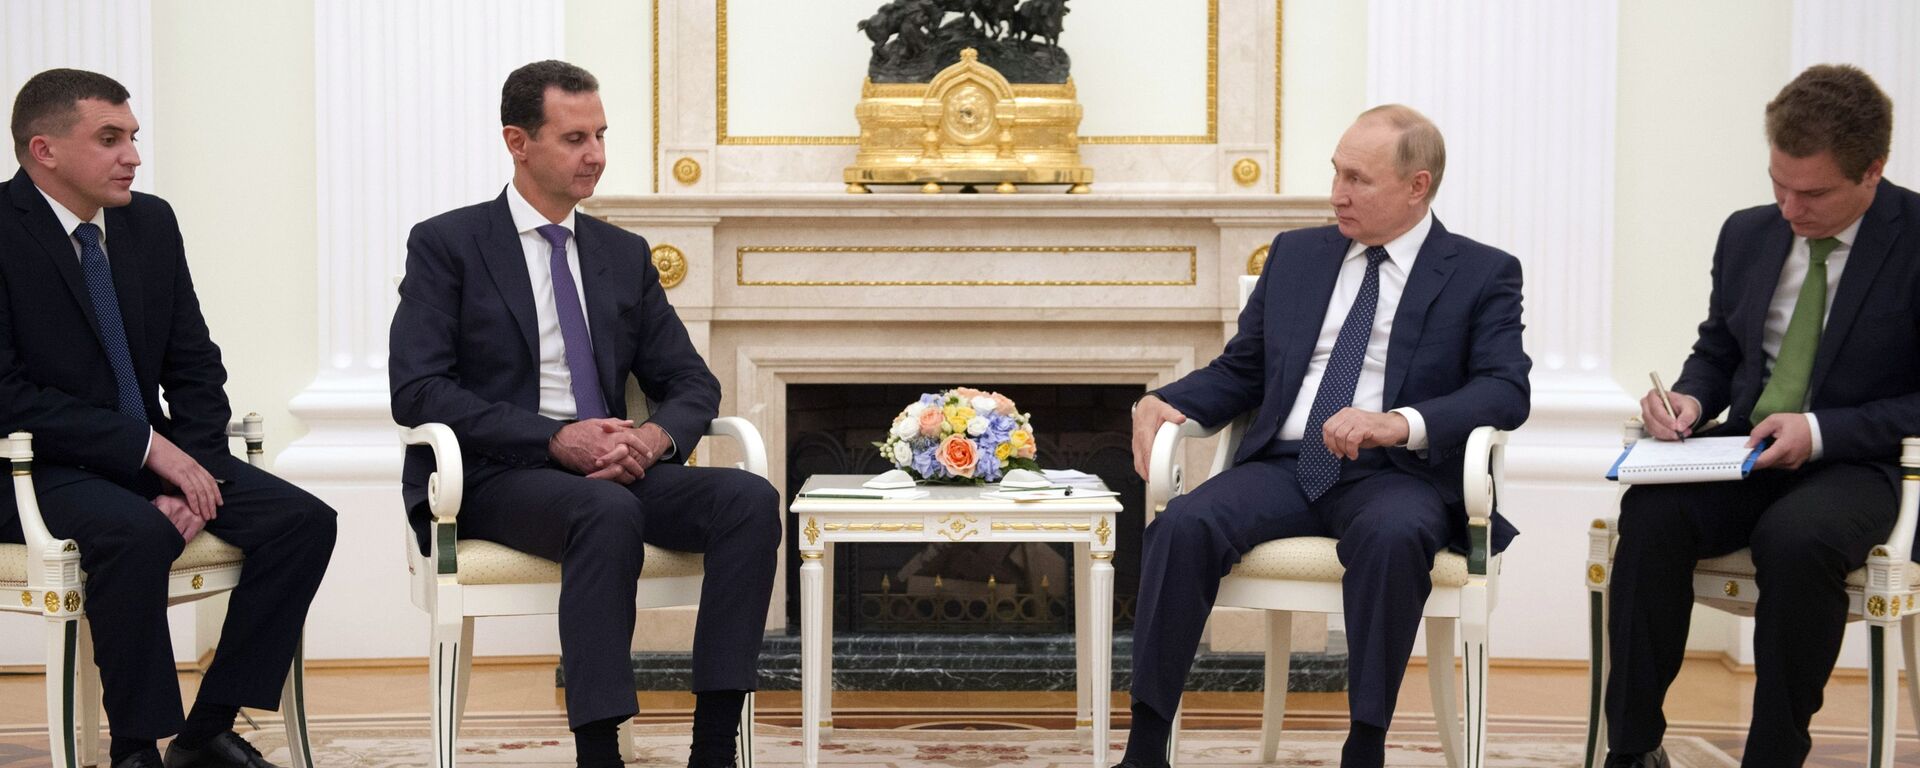 Ông Putin gặp Tổng thống Syria Bashar al-Assad tại Điện Kremlin - Sputnik Việt Nam, 1920, 14.09.2021